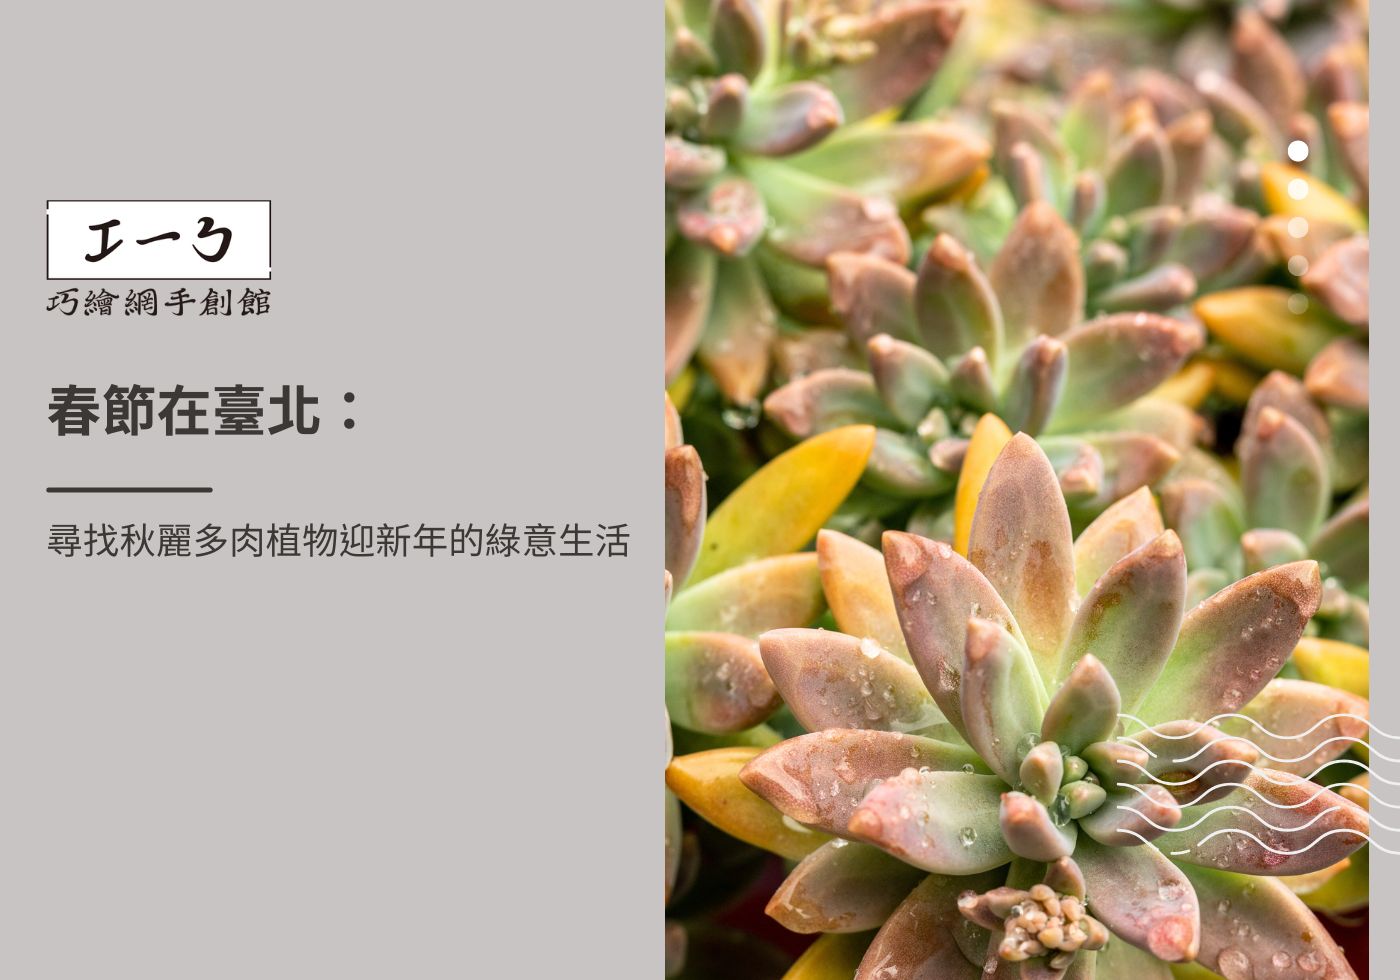 您目前正在查看 春節在臺北：尋找秋麗多肉植物迎新年的綠意生活